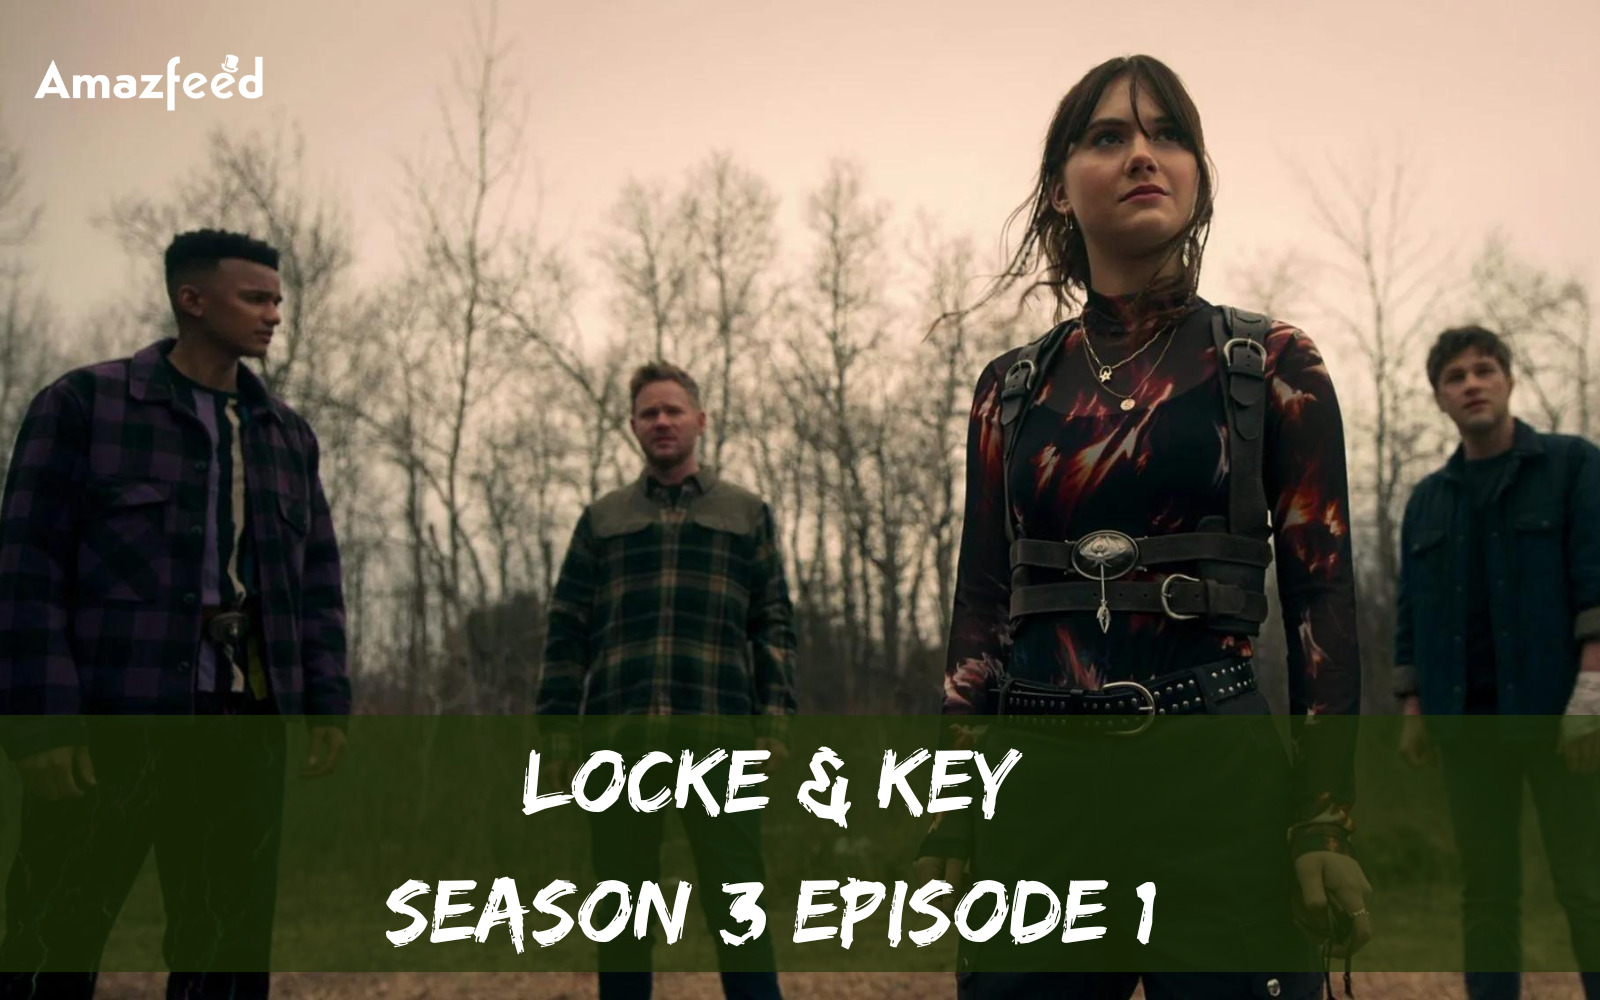 Locke & Key Season 3 Episode 1 release date